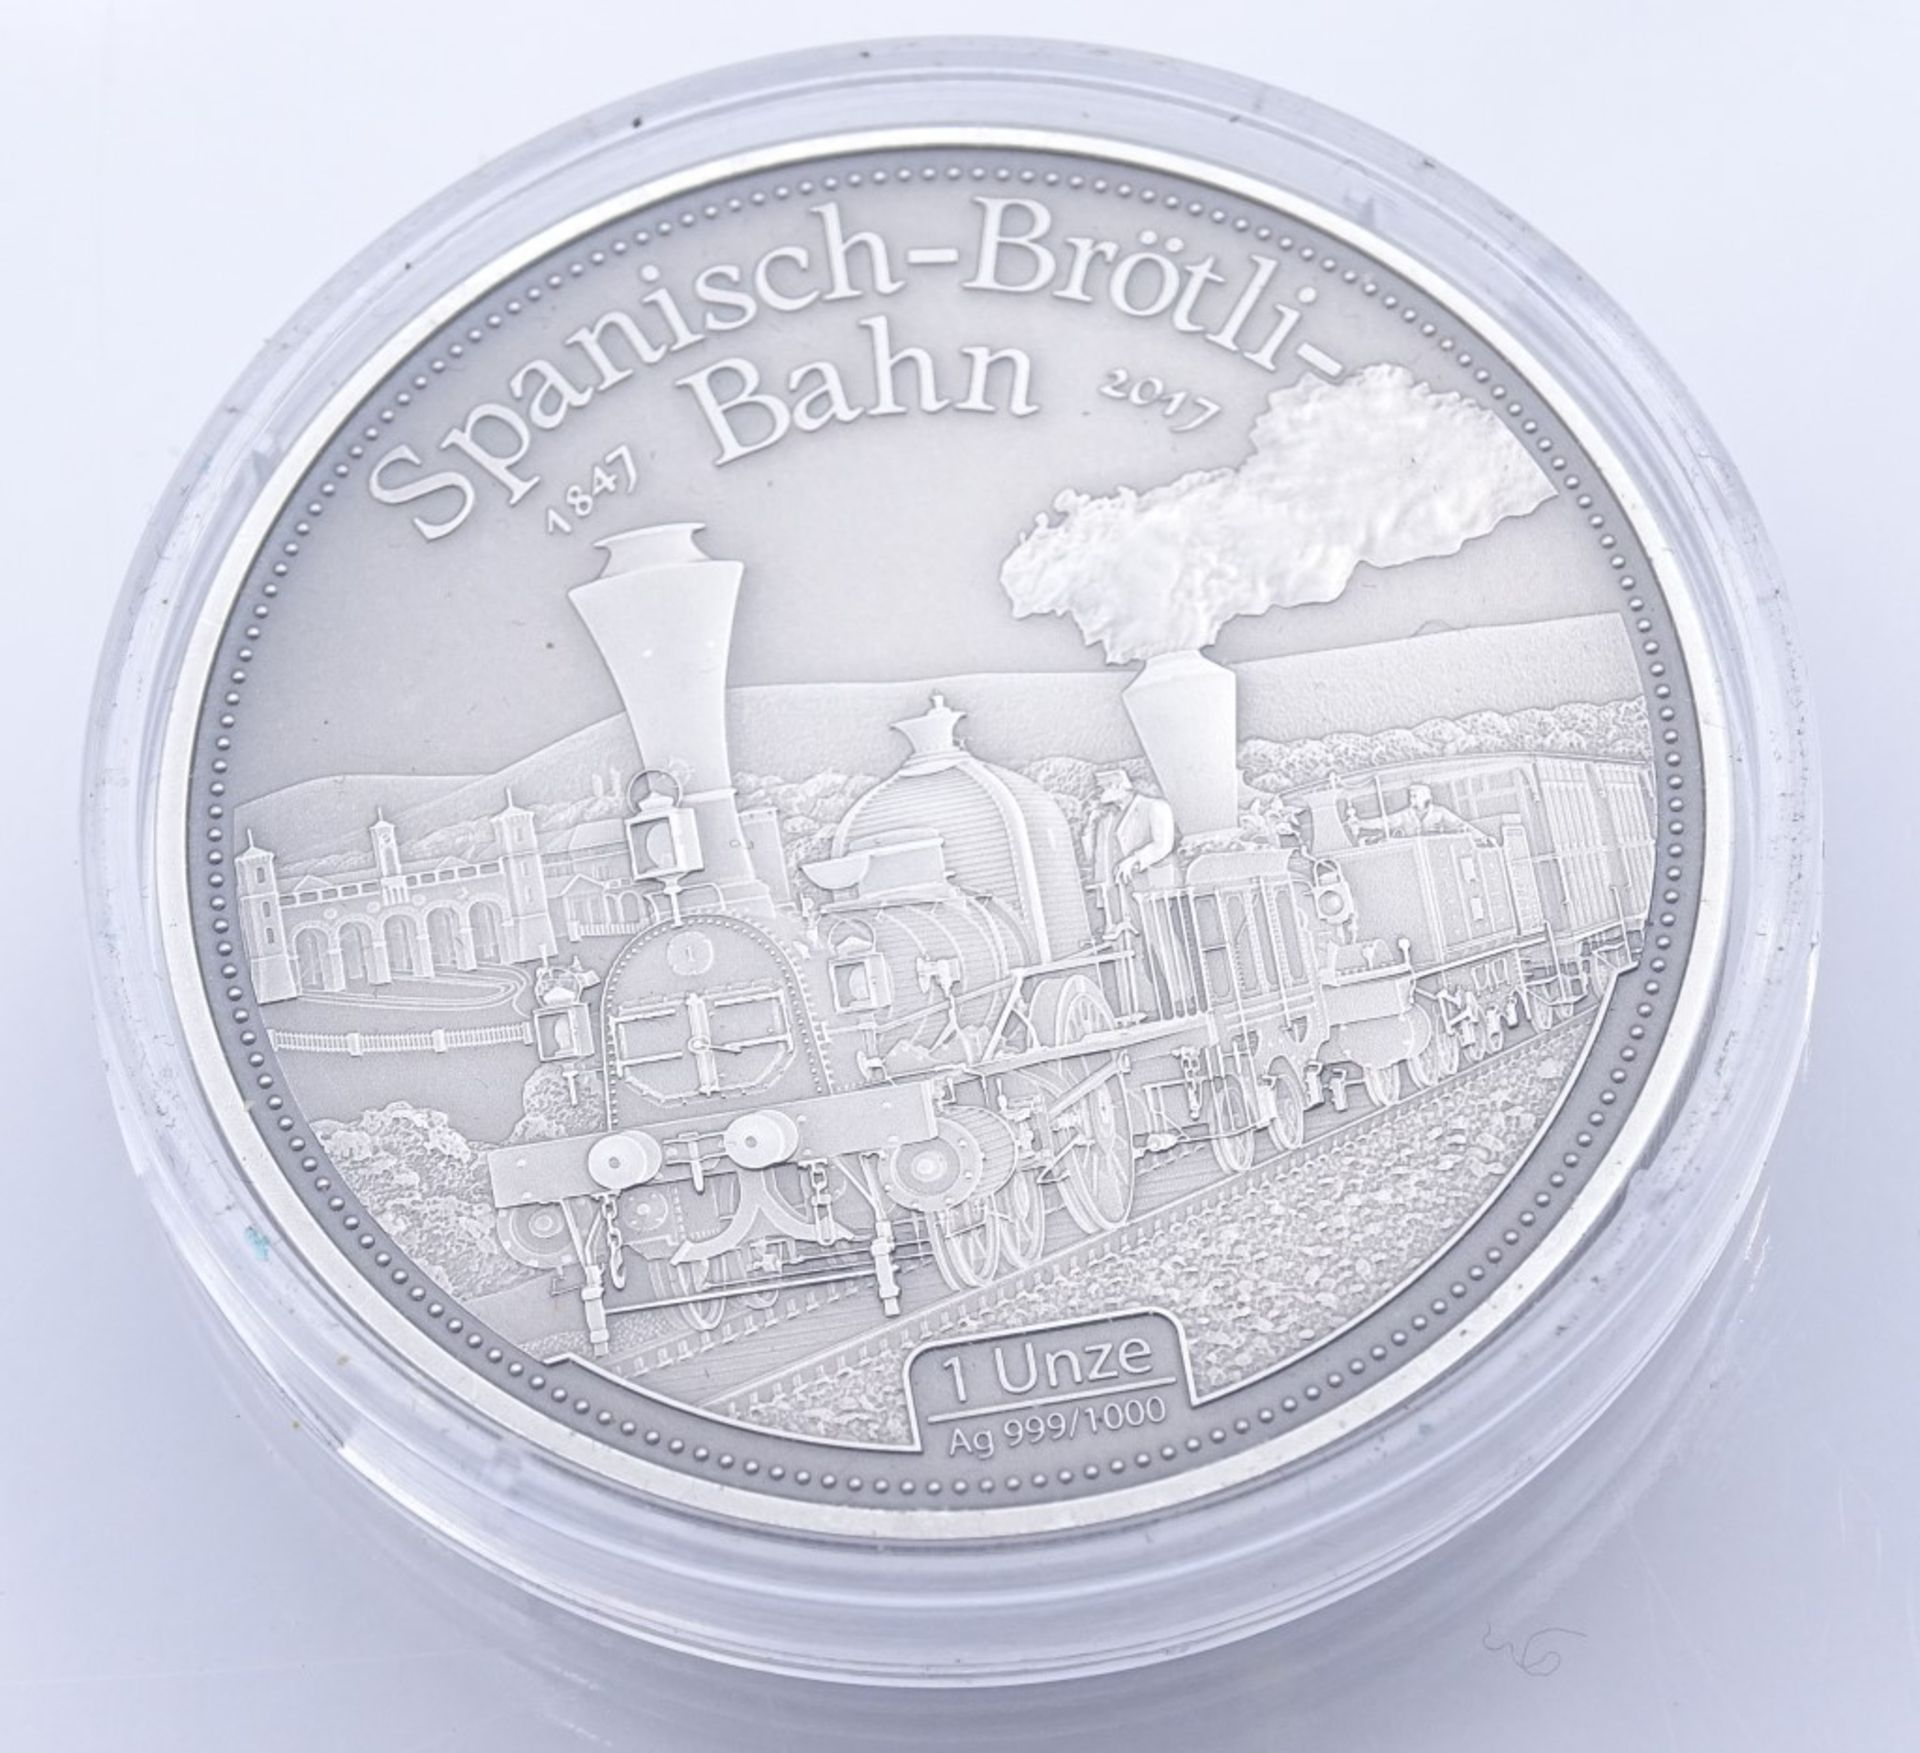 Feinsilber Medaille 1 Oz 999/000, Spanisch-Brötli-Bahn,in Kapse- - -22.61 % buyer's premium on the